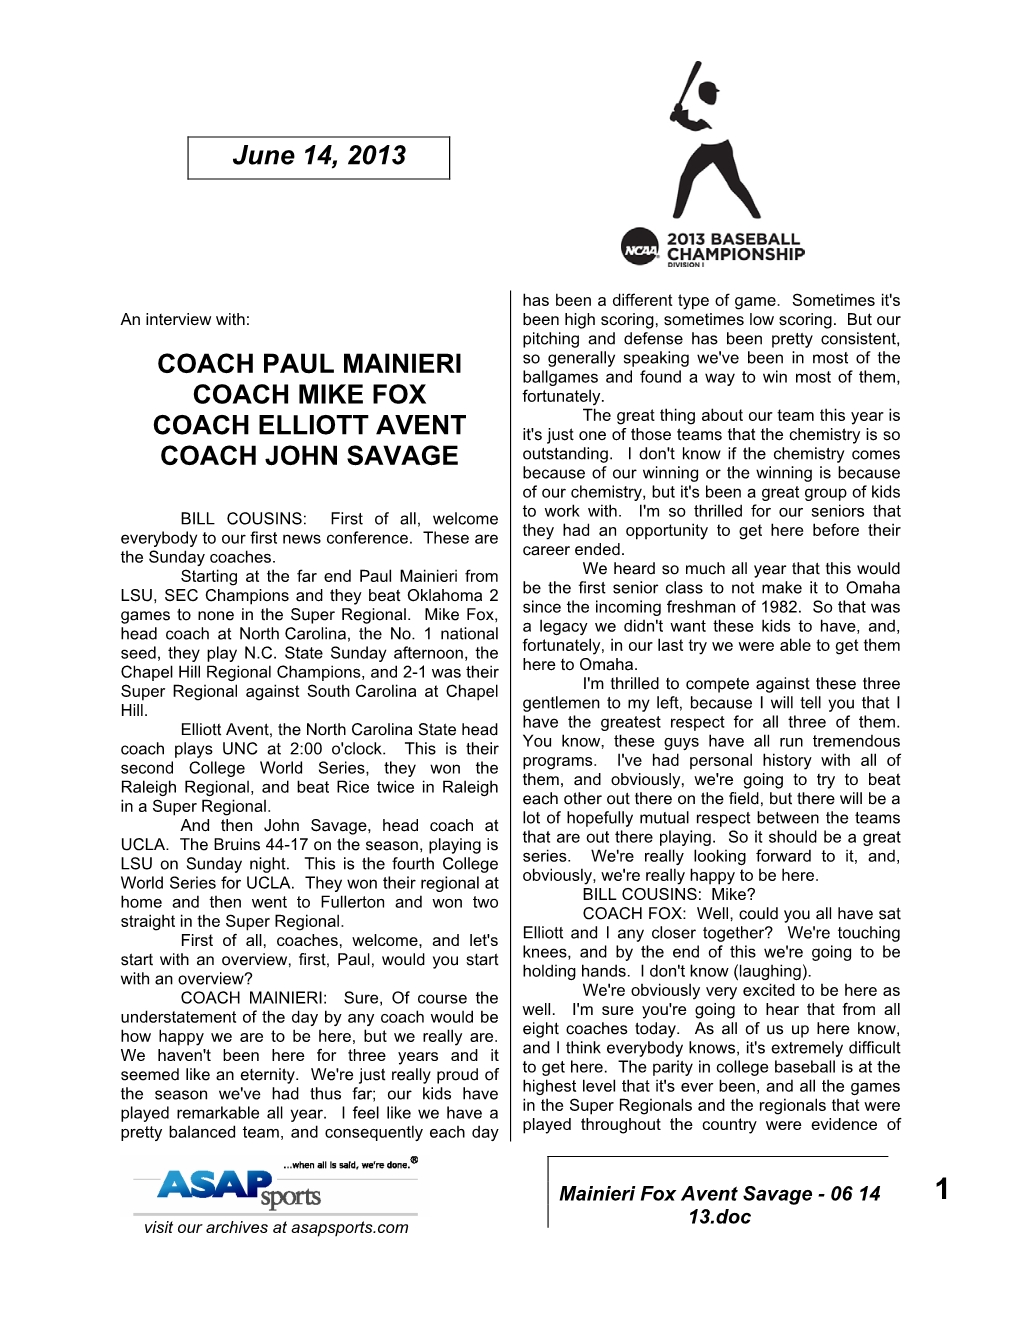 Coach Paul Mainieri Coach Mike Fox Coach Elliott Avent Coach John Savage